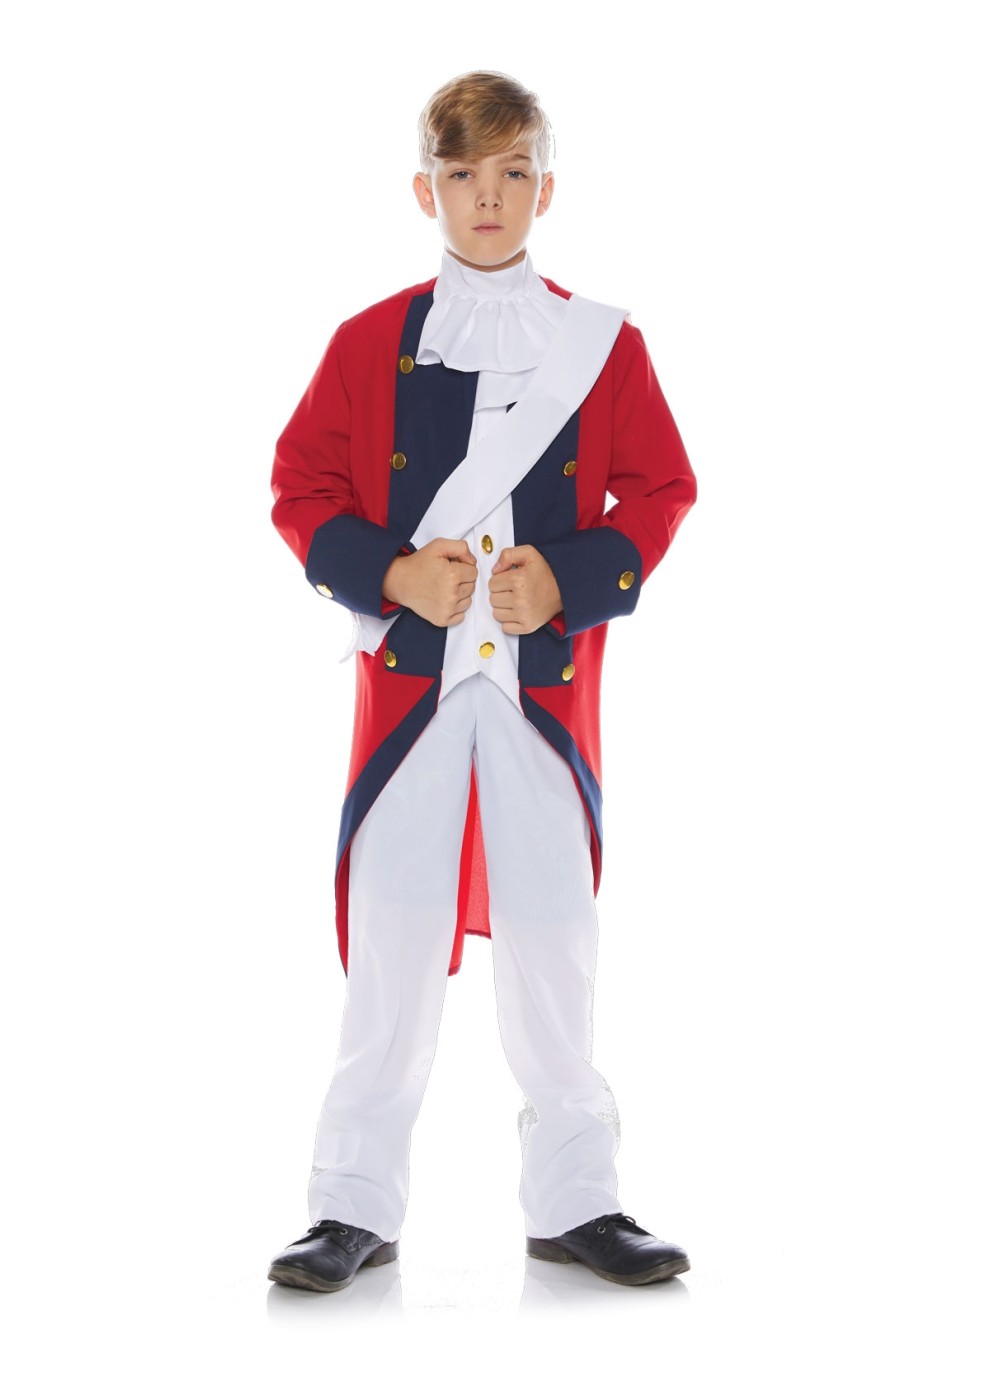 Redcoat Soldier Boy Costume